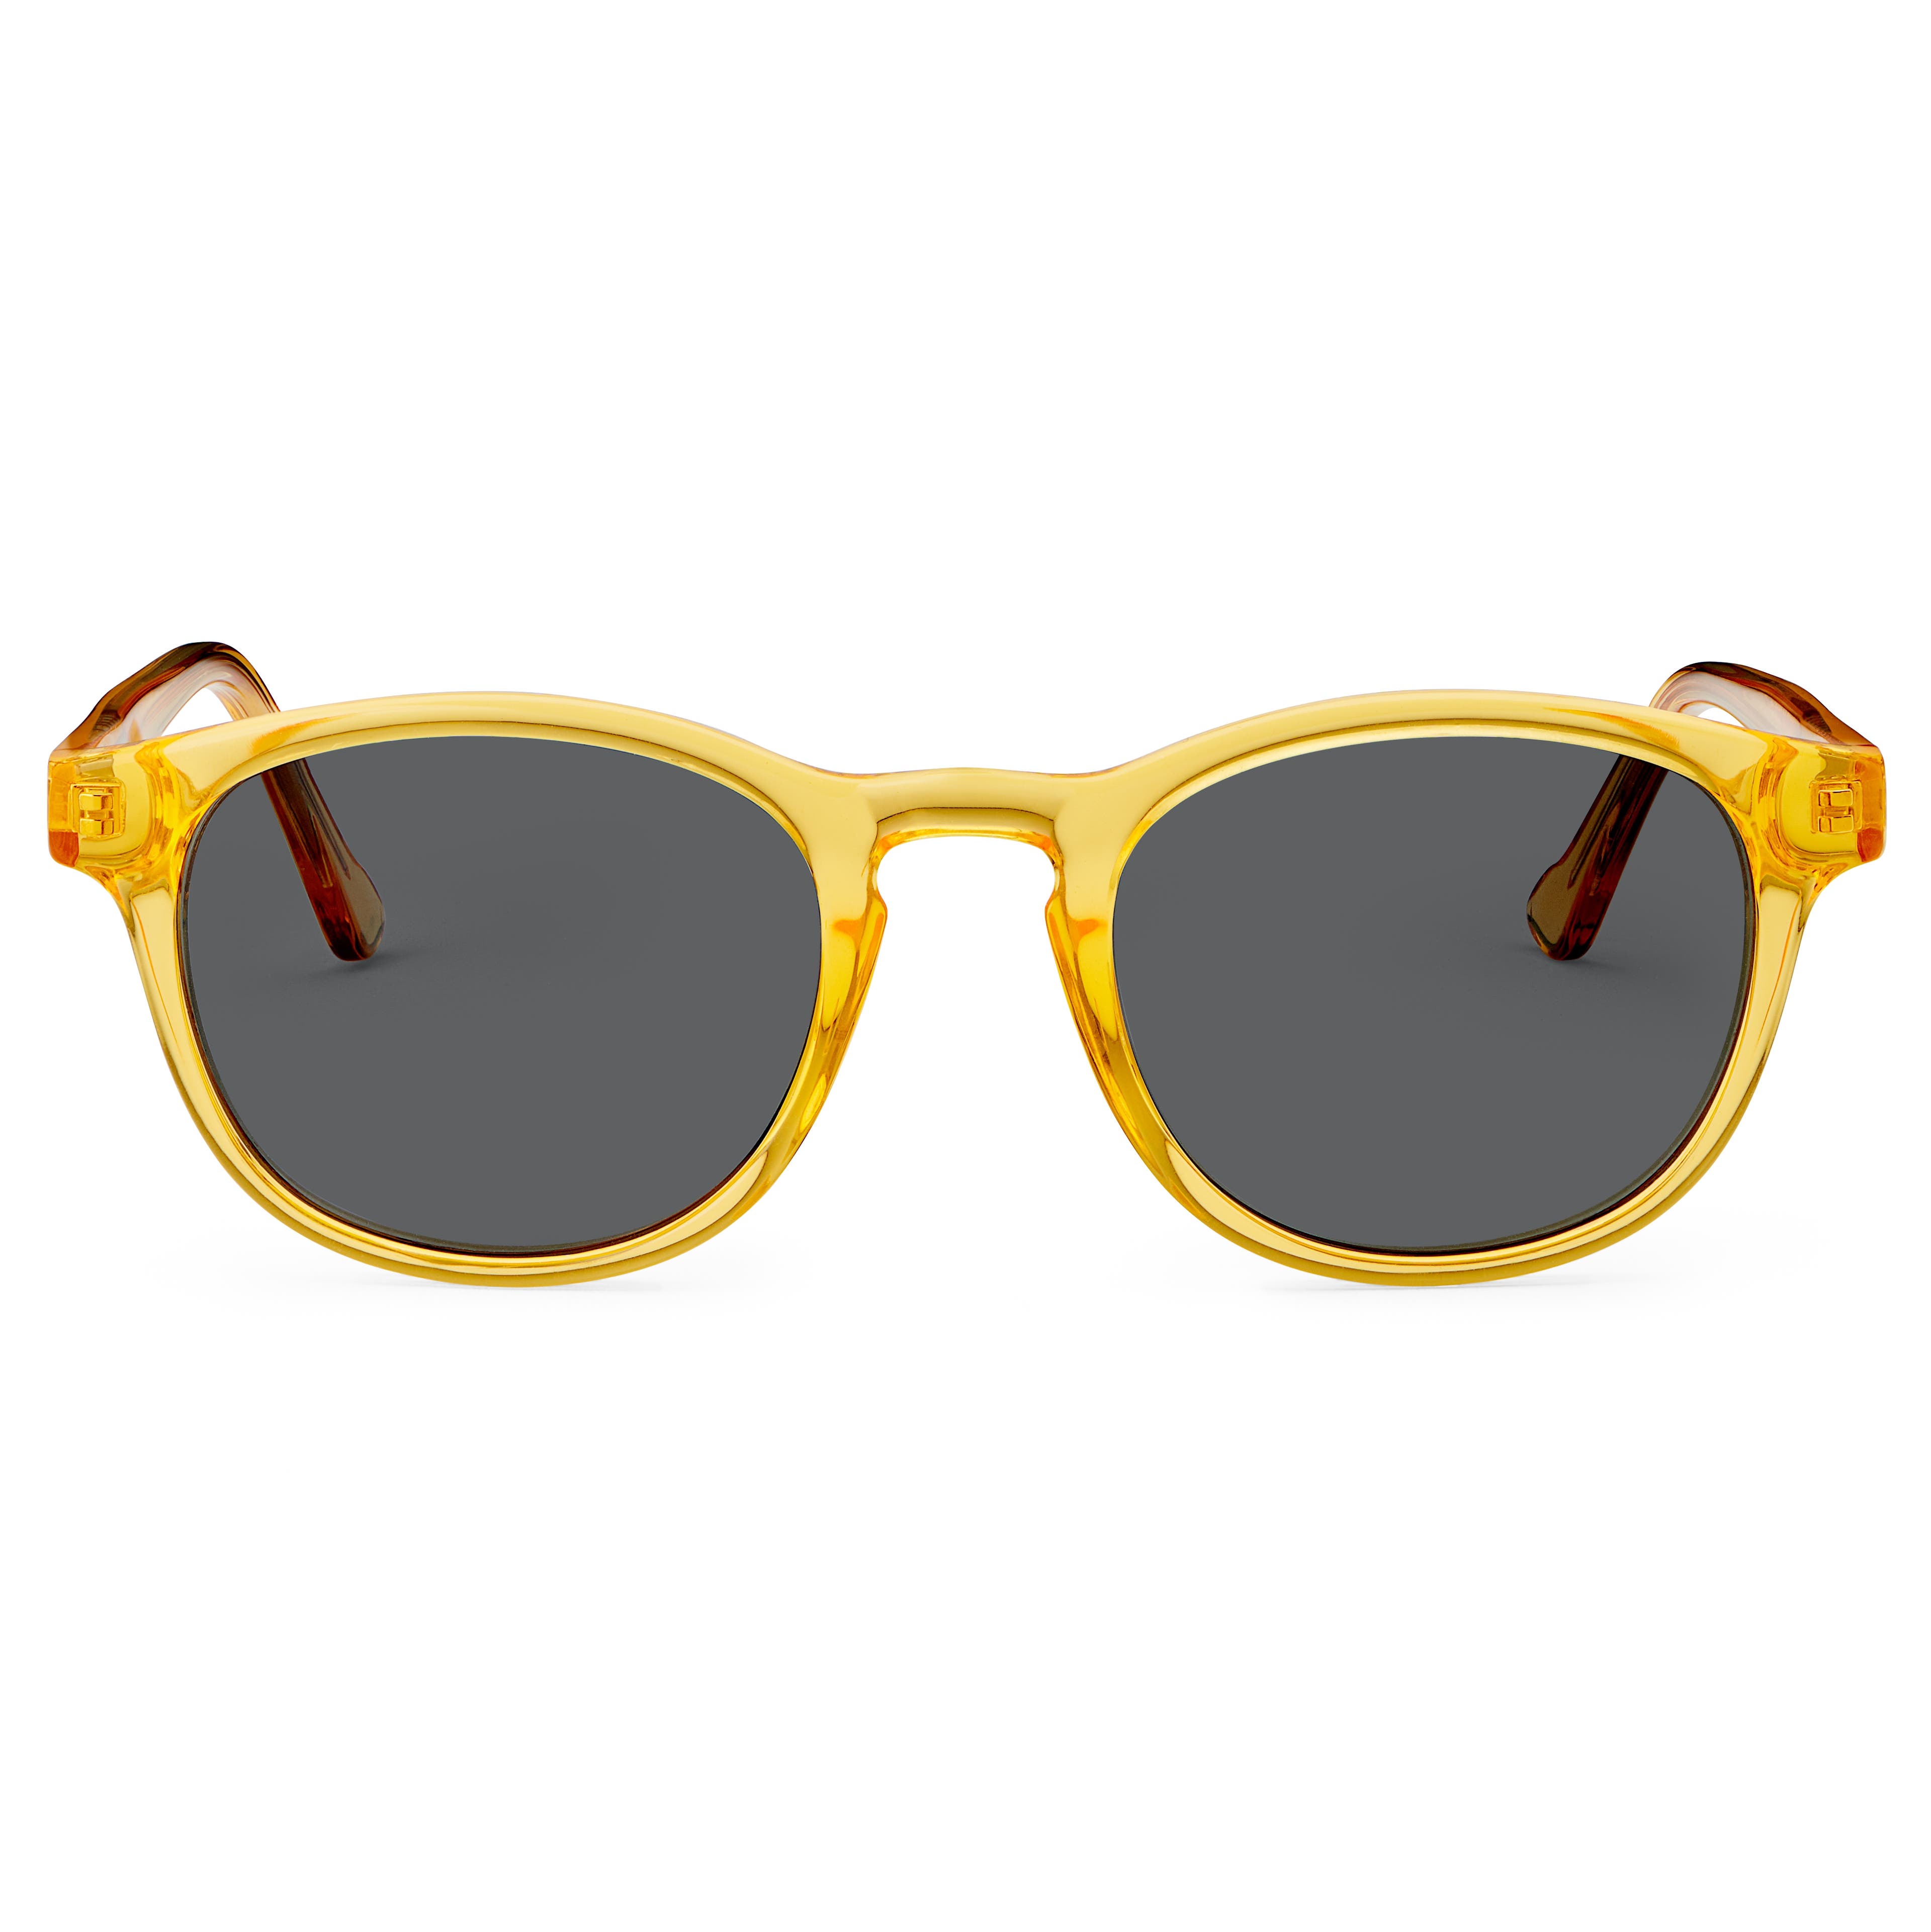 Класически жълти поляризирани опушени слънчеви очила